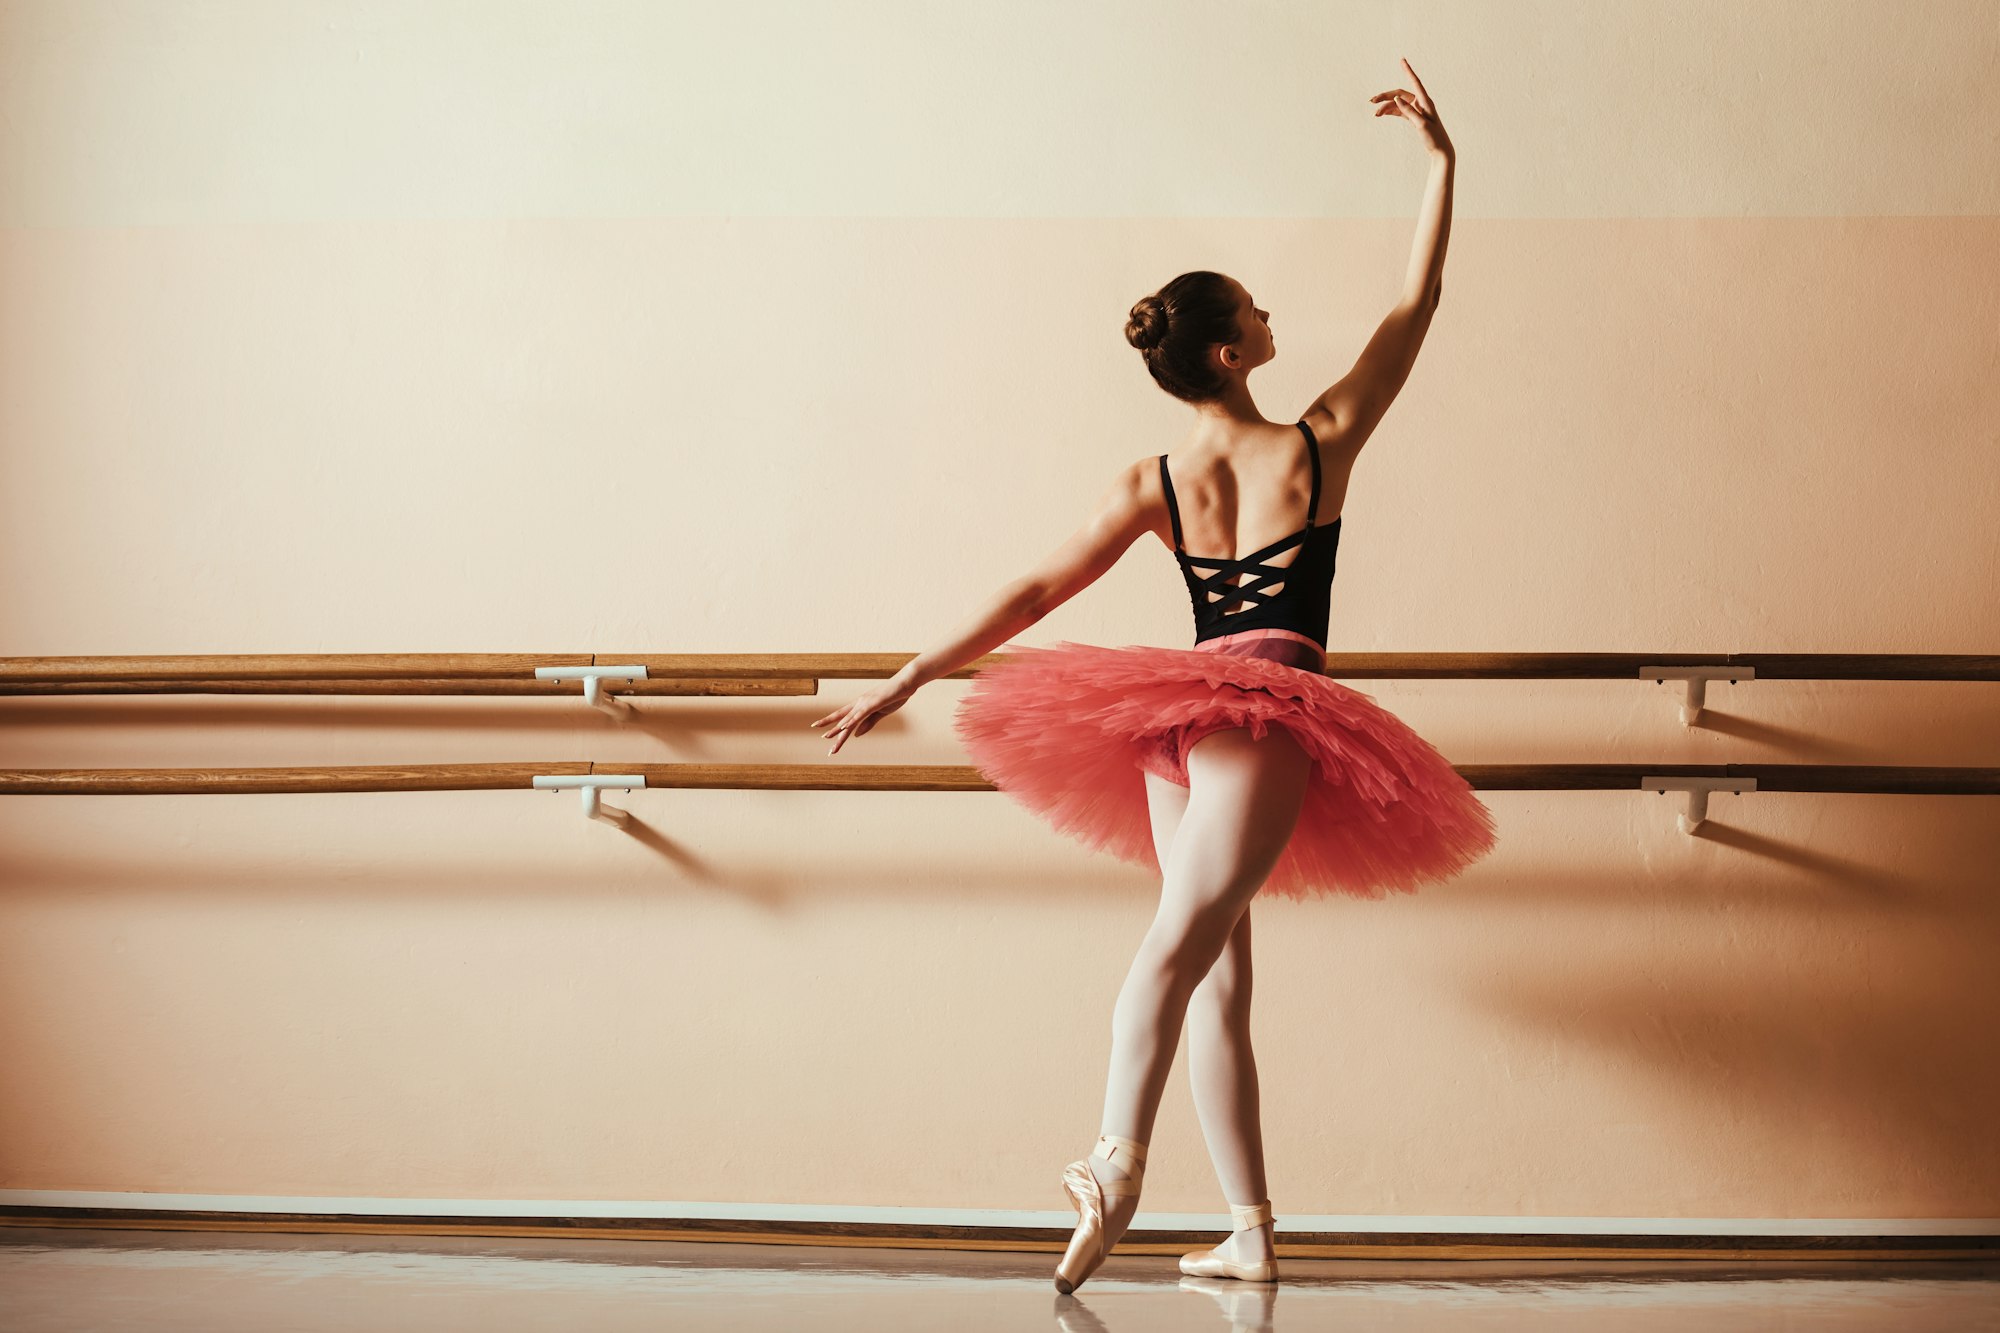 Back view of graceful female ballet dancer at ballet studio.